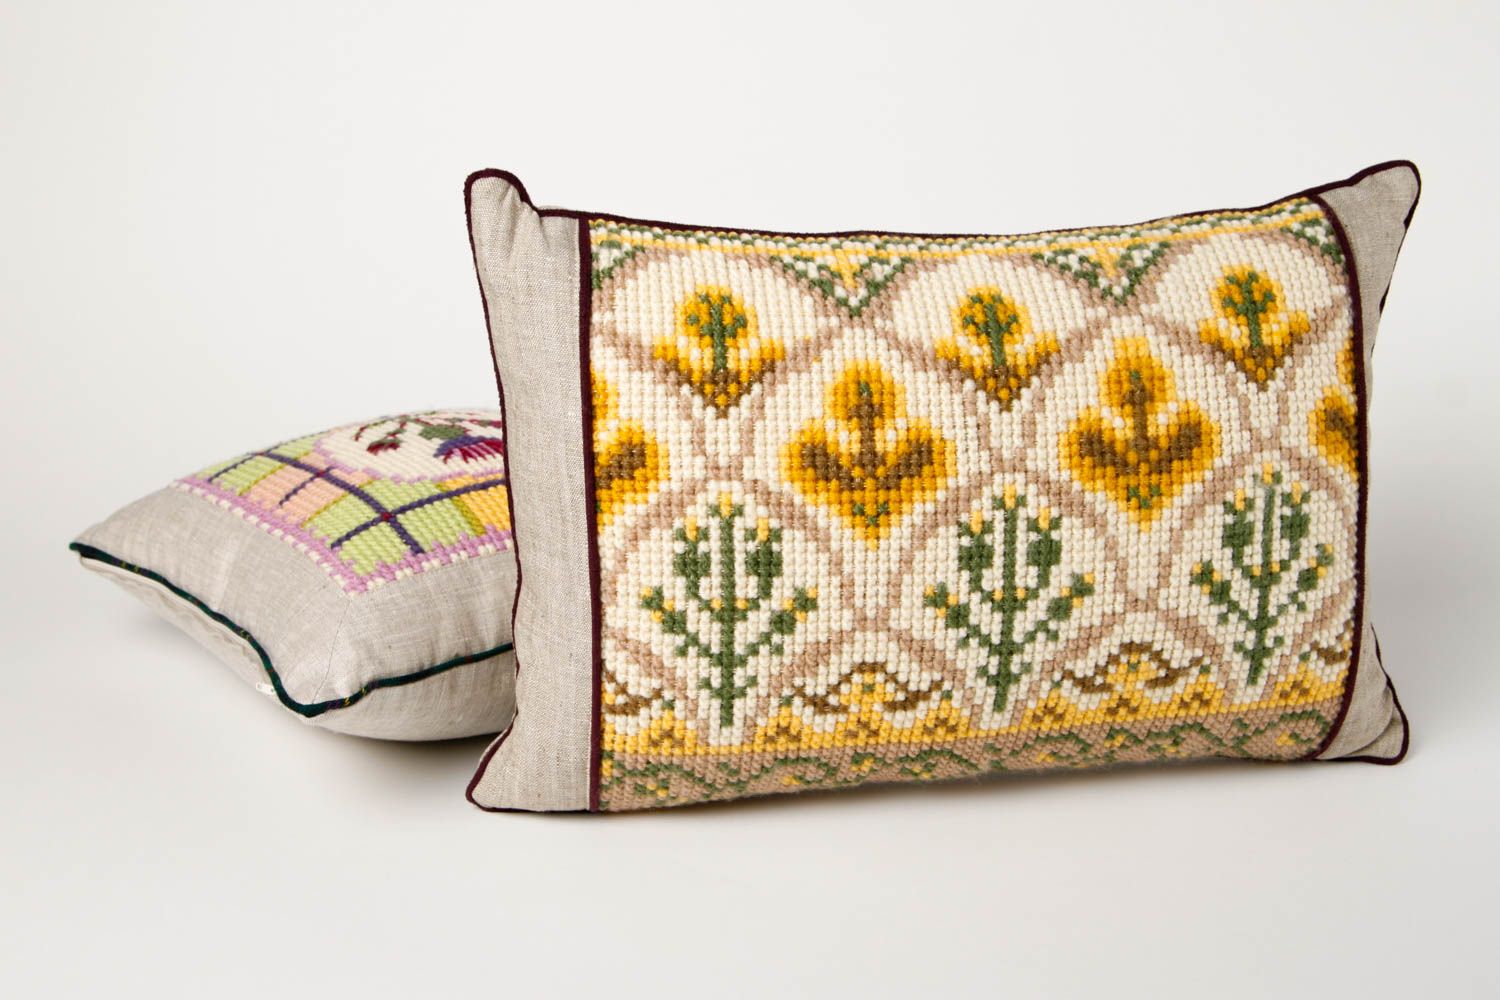 Подушка на диван подарок ручной работы красивая маленькая декоративная подушка фото 1